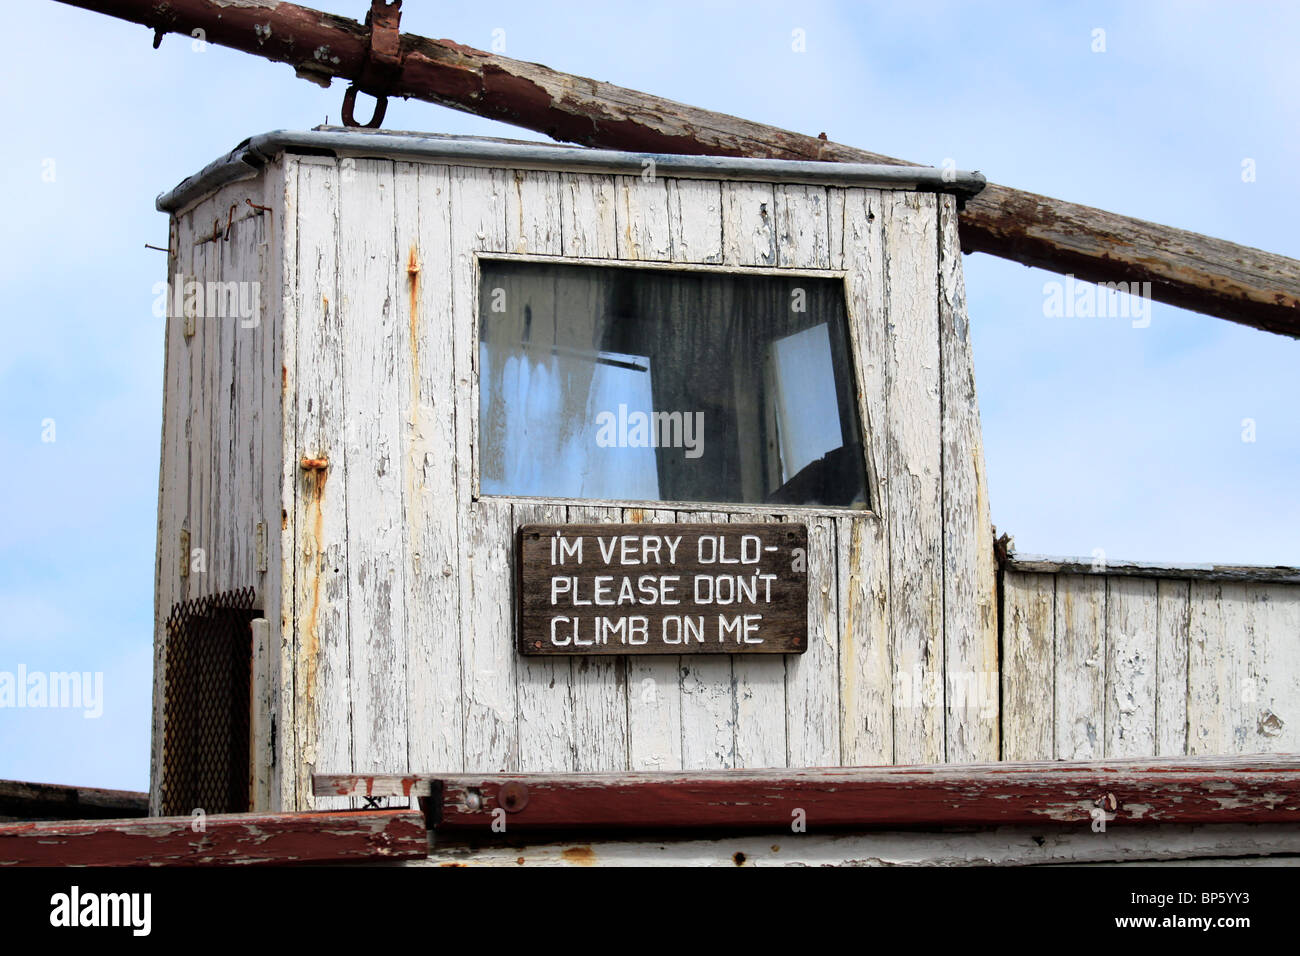 Alte Wetter geschlagen Boot mit Schild "bin ich sehr alt - bitte nicht auf mich" in Hout Bay Hafen in der Nähe von Kapstadt, Südafrika. Stockfoto